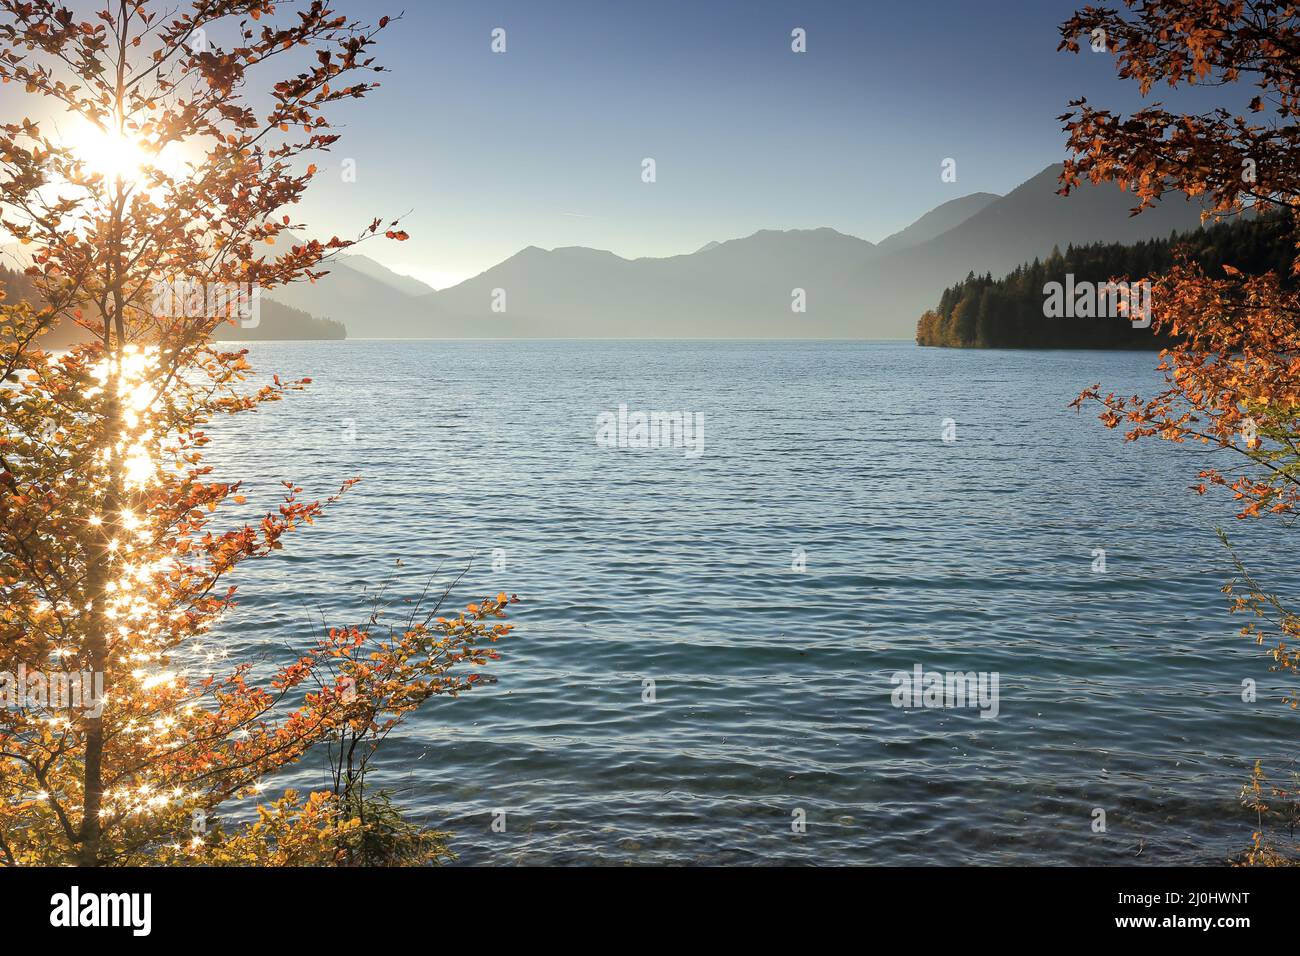 Lake in autumn Stock Photo